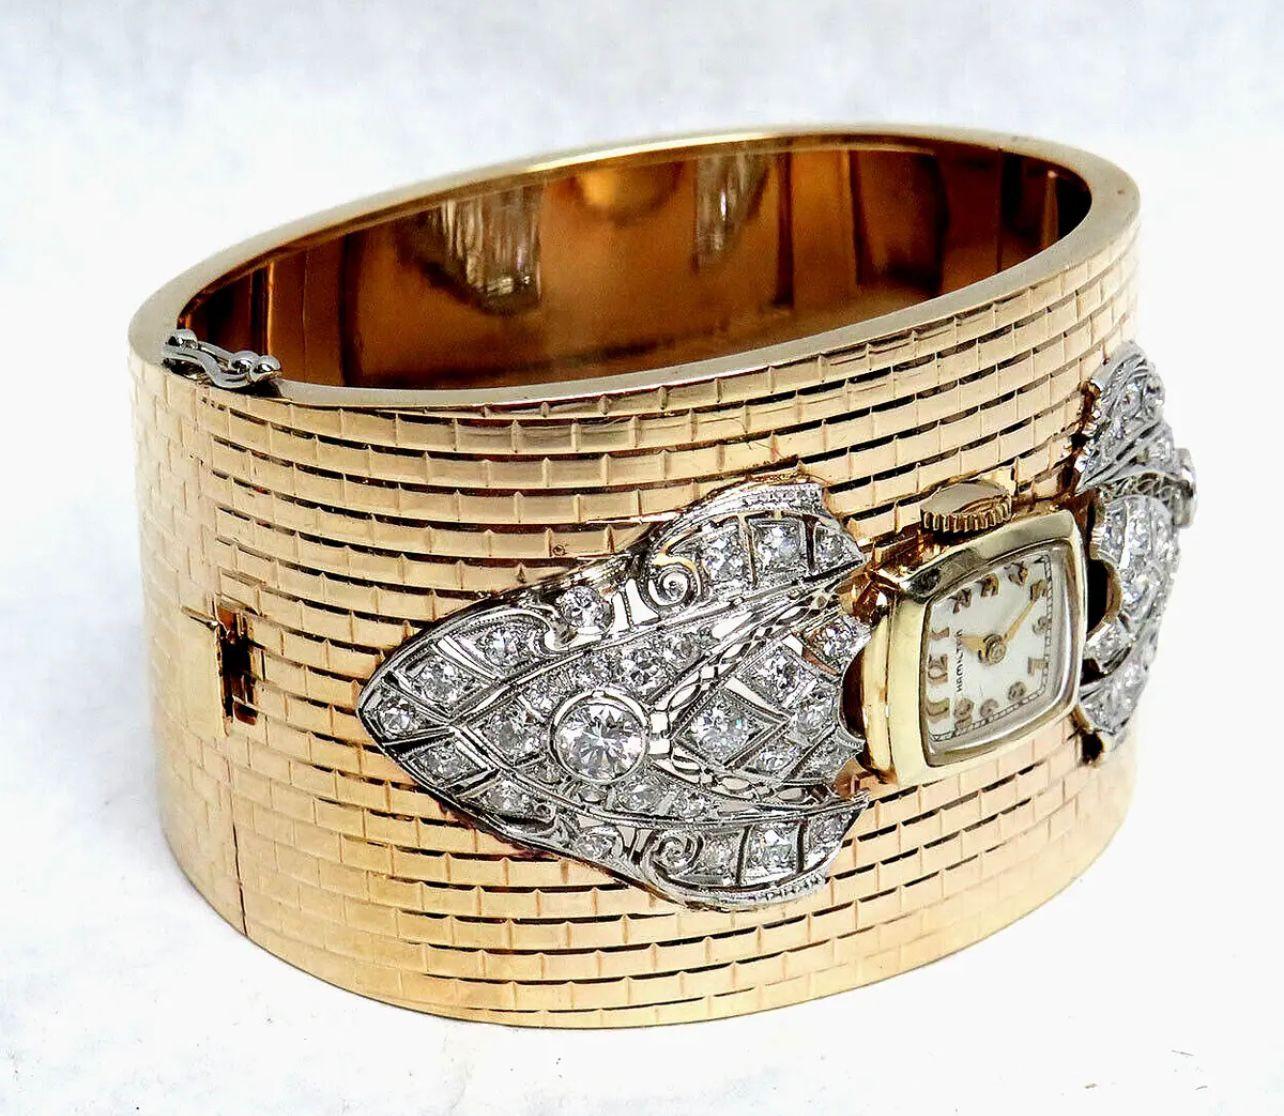 Vintage Hamilton-Uhr, eingebettet in ein Manschettenarmband aus 14-karätigem Gold und verziert mit Diamanten.
Zeitraum: 1950s
Abmessungen: 
Länge: 15 cm
Breite: 4 cm
Zustand: sehr gut. 

........Zusätzliche Informationen ........

- Das Foto kann